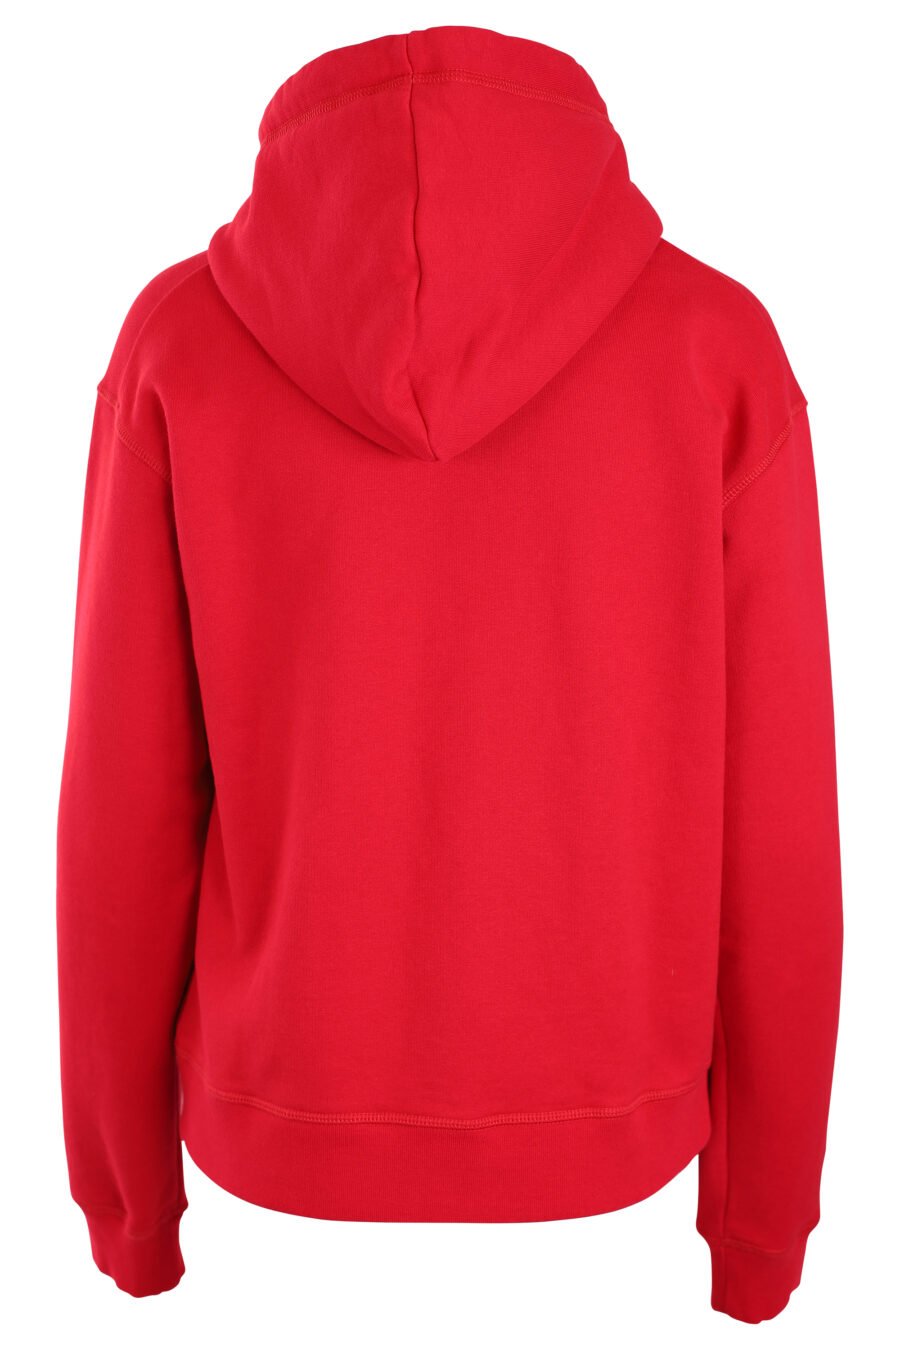 Sudadera roja con capucha y logo "icon" blanco - IMG 3303